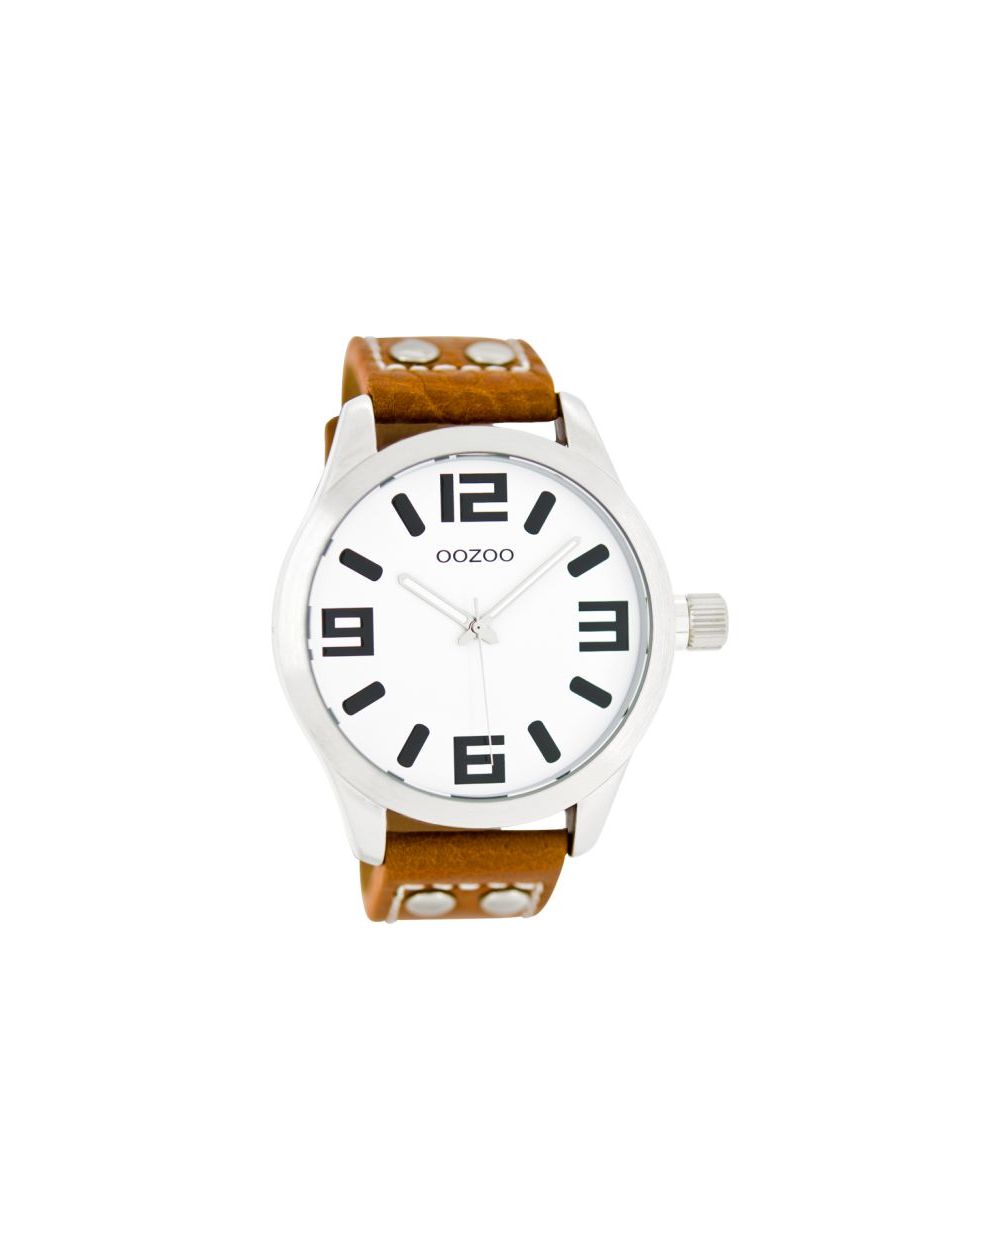 Oozoo montre/watch/horloge C1051